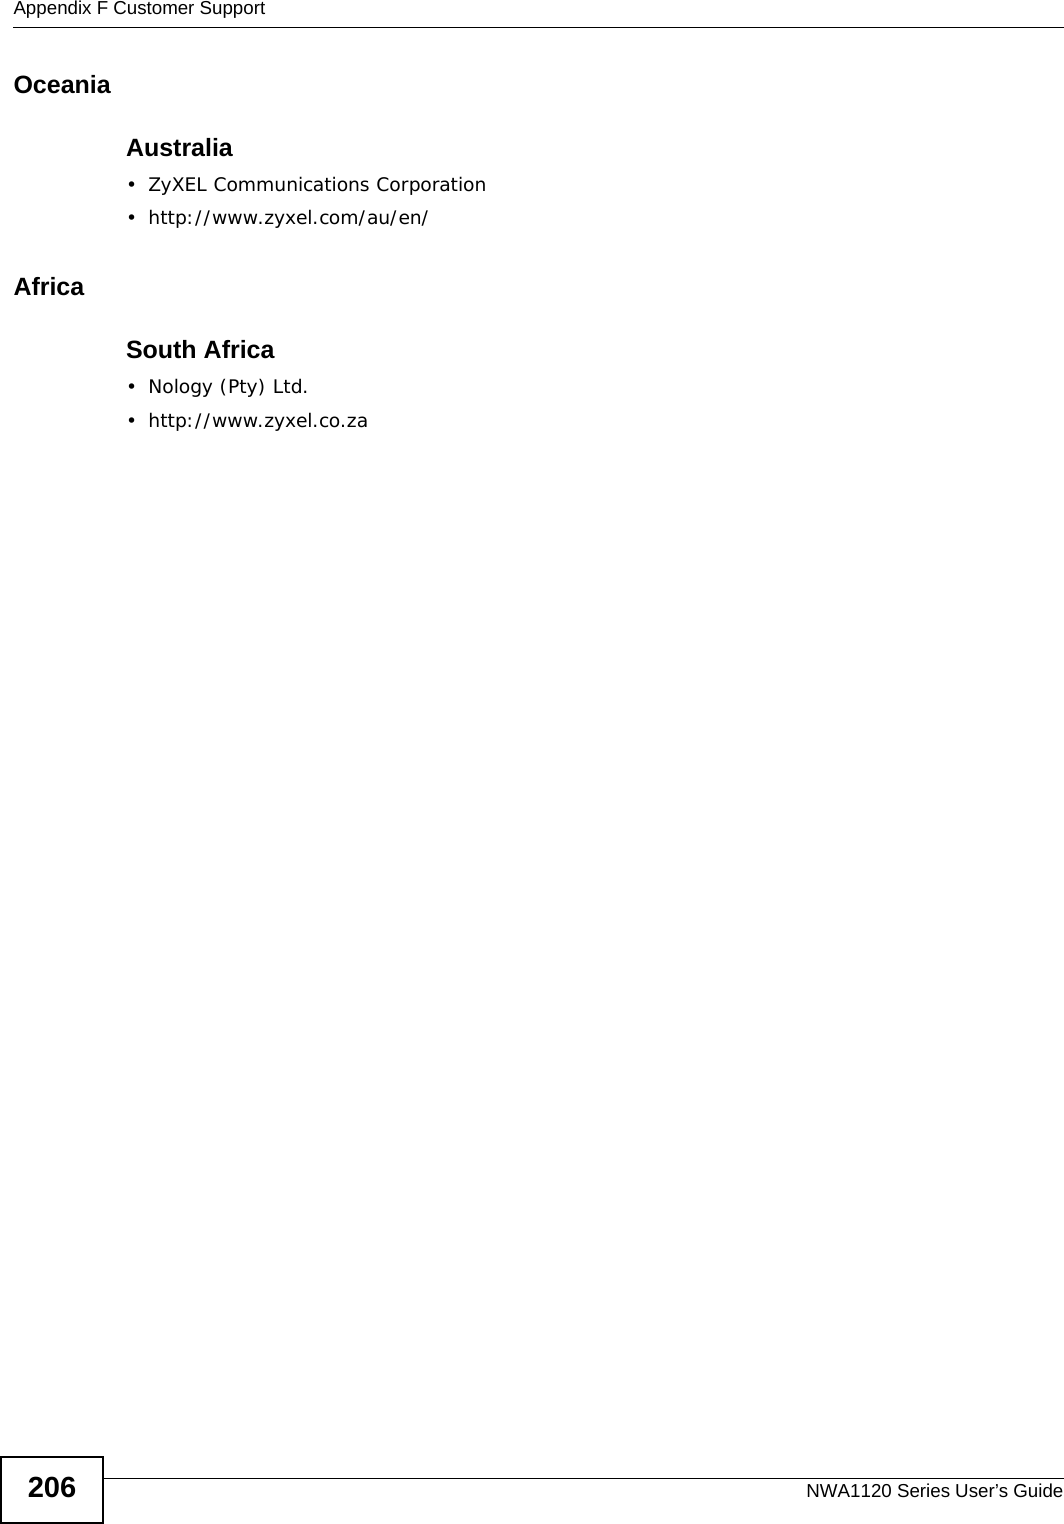 Appendix F Customer SupportNWA1120 Series User’s Guide206OceaniaAustralia• ZyXEL Communications Corporation• http://www.zyxel.com/au/en/AfricaSouth Africa• Nology (Pty) Ltd.• http://www.zyxel.co.za